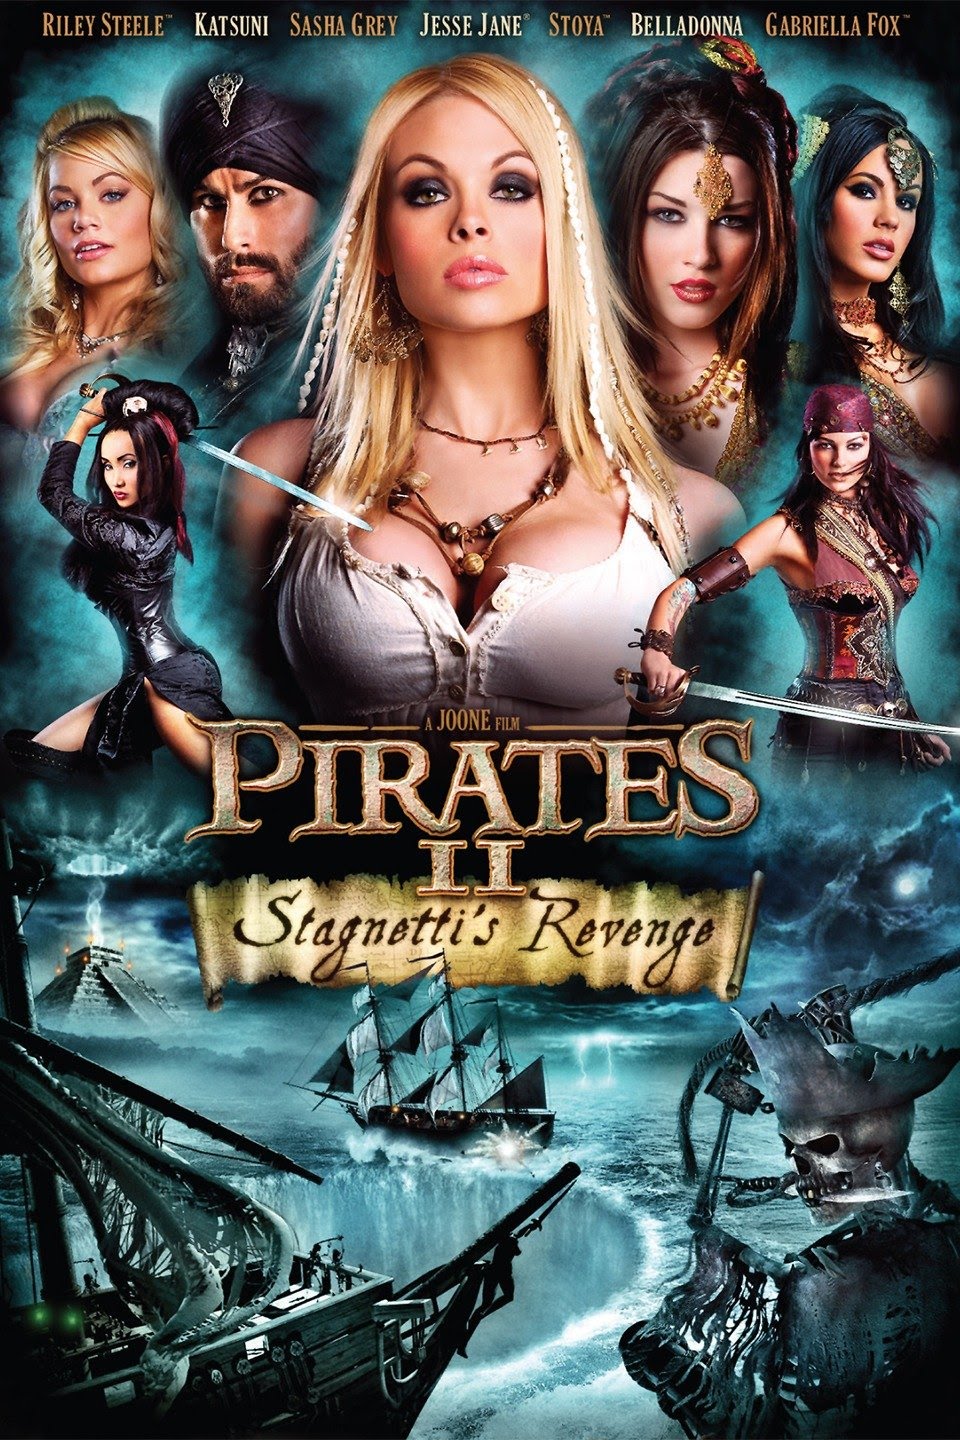 Пиратки с членами на корабле знают толк в развлечениях